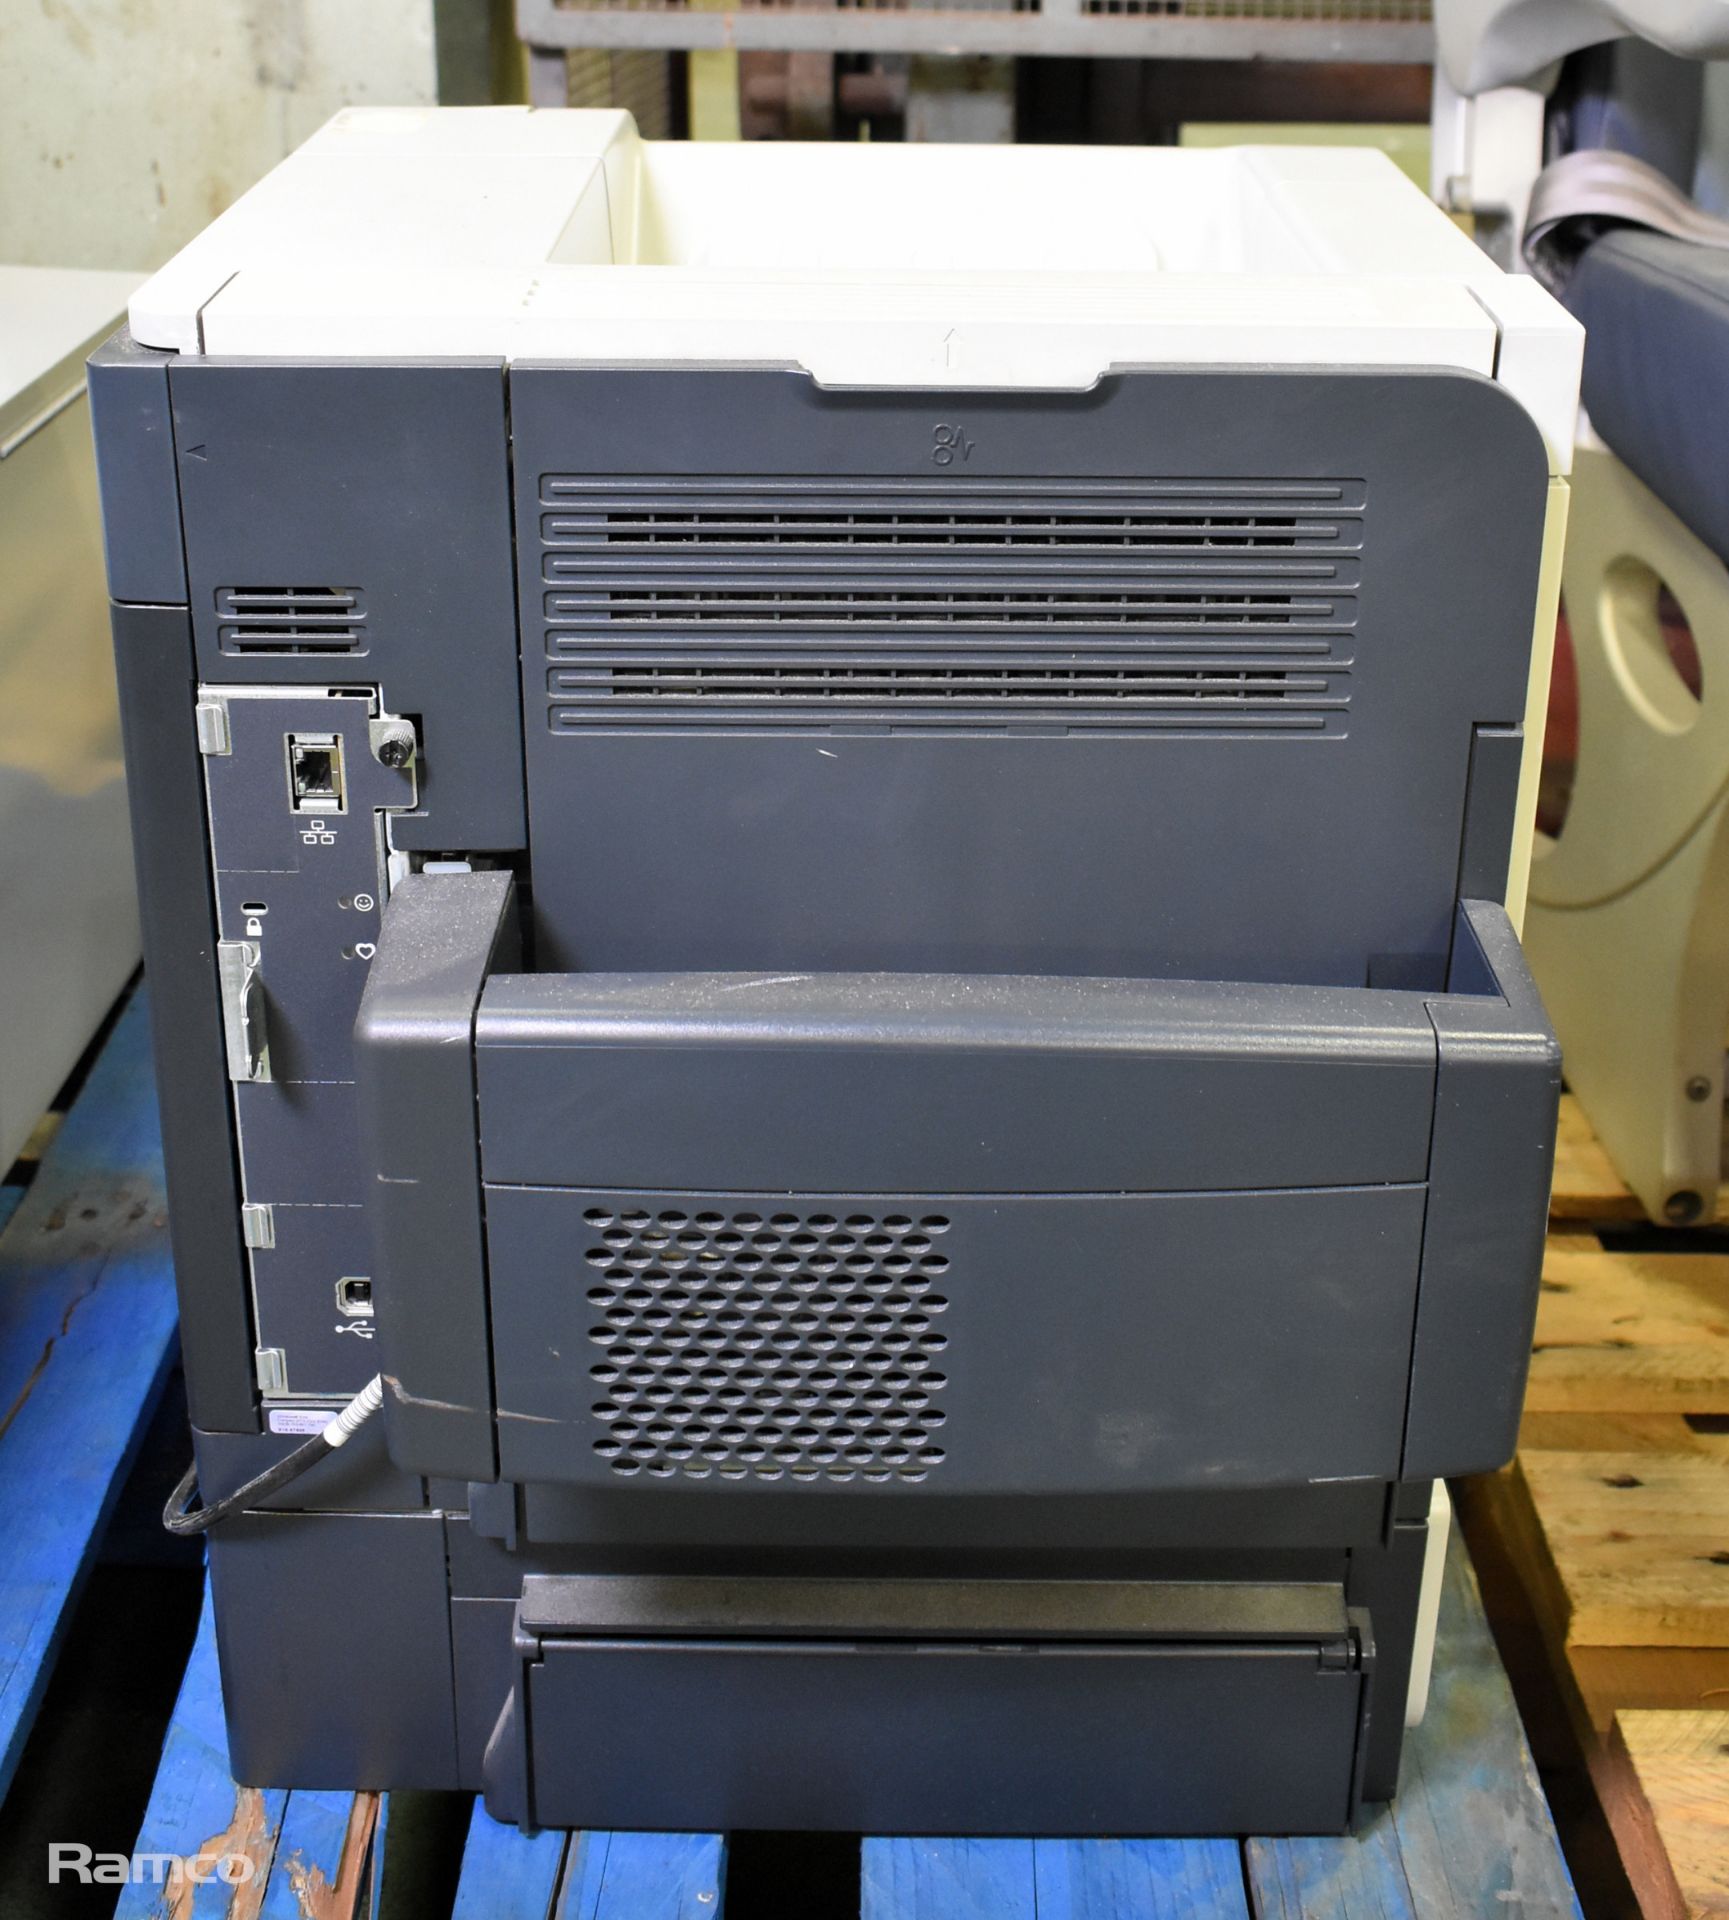 HP LaserJet 600 M602 laser printer - Image 7 of 7